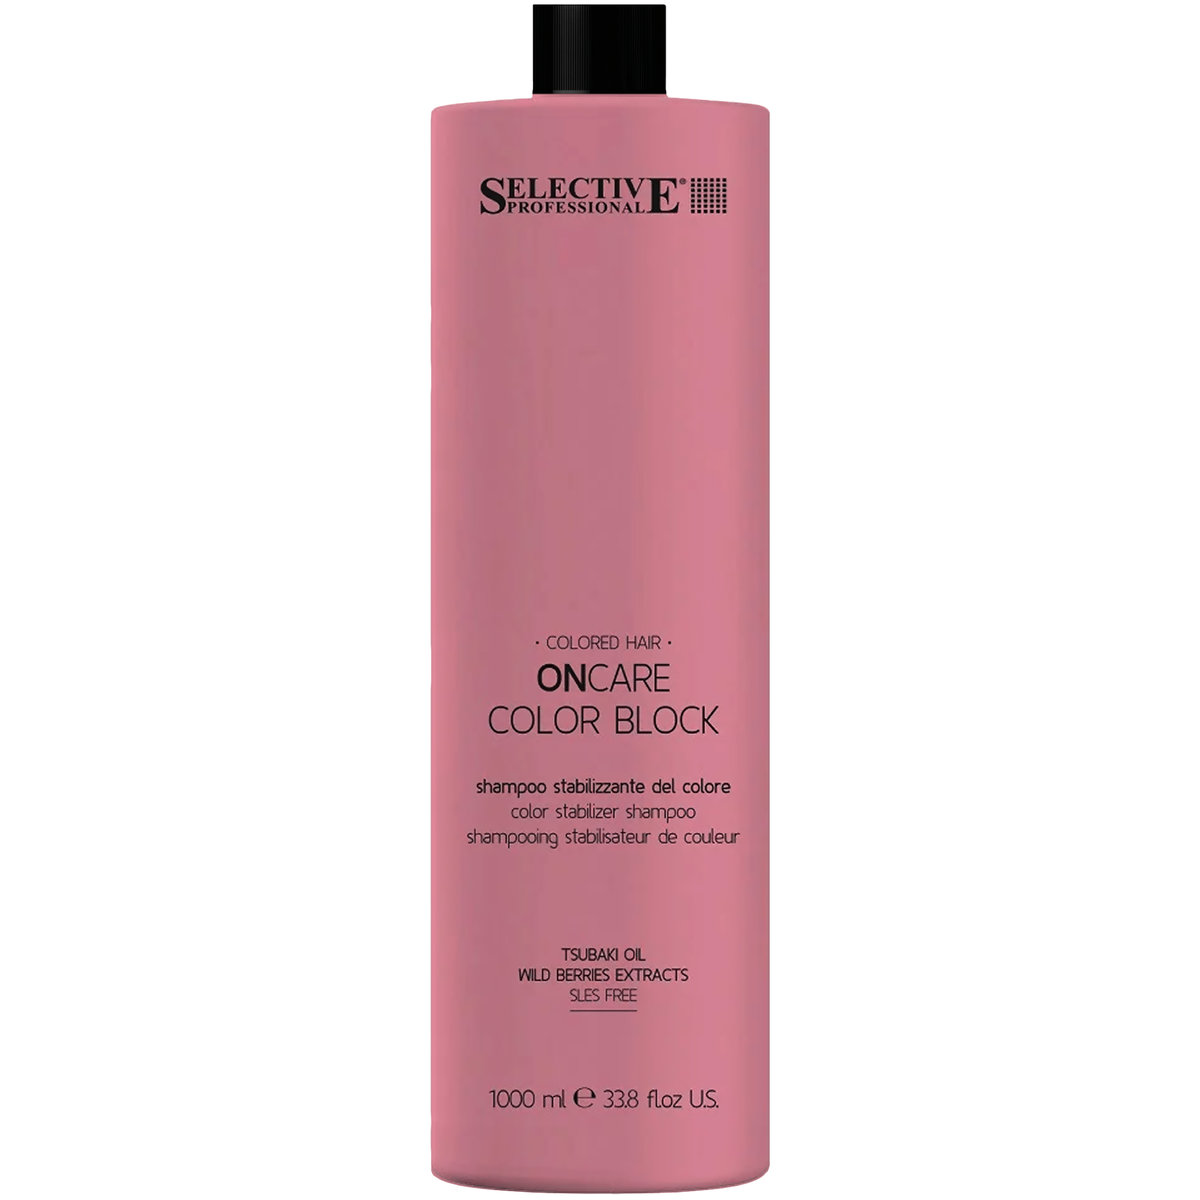 Selective, On Care Color Block, Szampon do włosów farbowanych, stabilizuje kolor, zapobiega blaknięciu, nawilża, 1000 ml